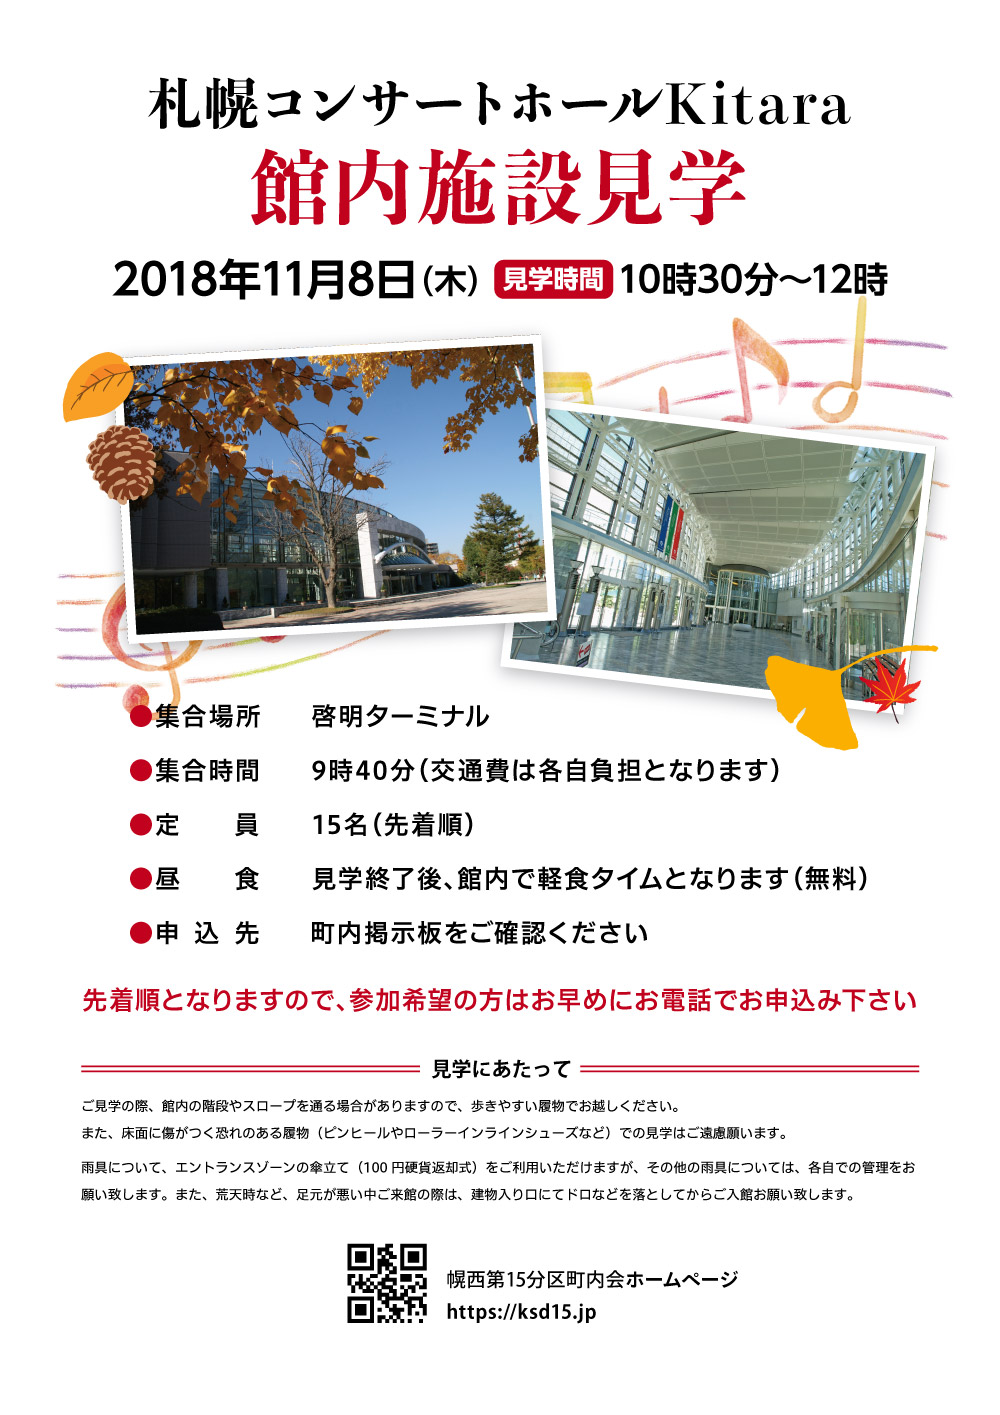 札幌コンサートホールKitara 館内施設見学